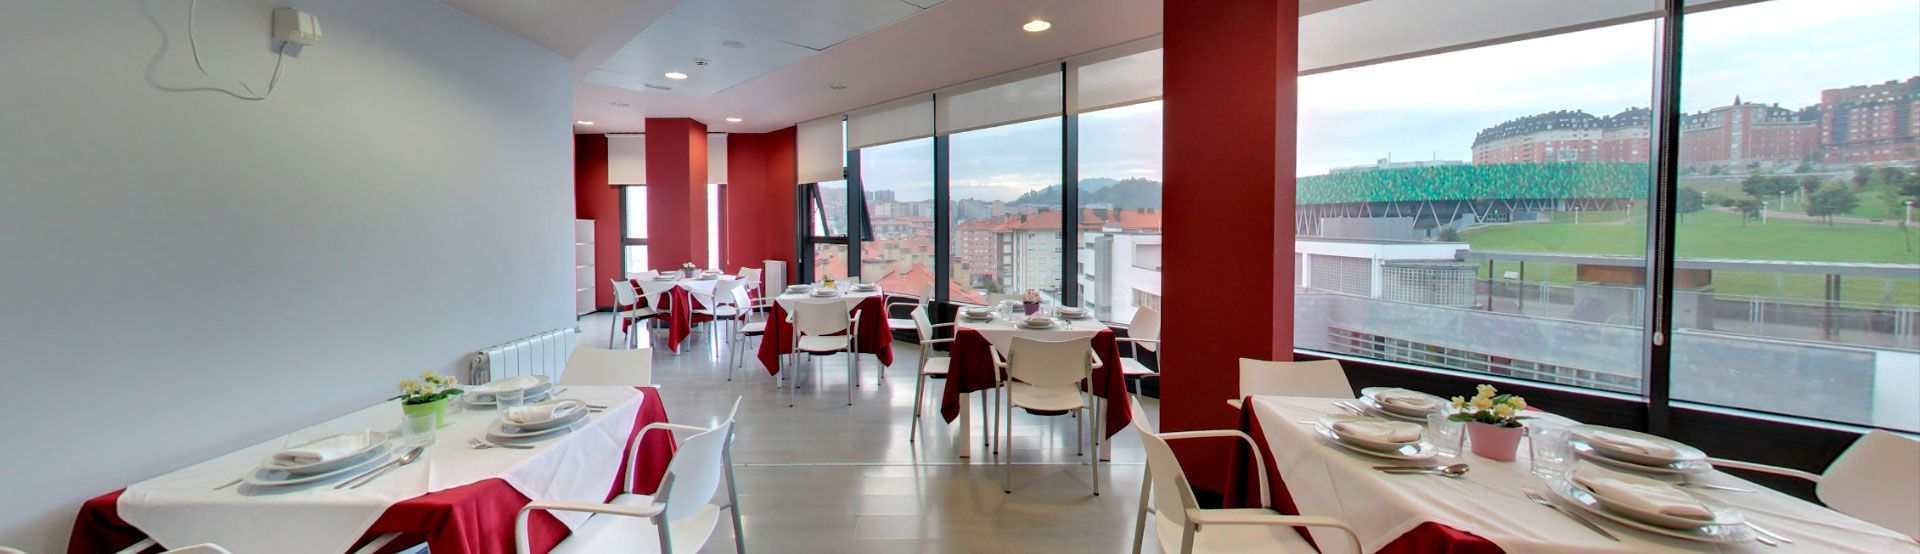 Residencia de ancianos. Residencia para mayores y tercera edad en el centro urbano de Bilbao Bizkaia